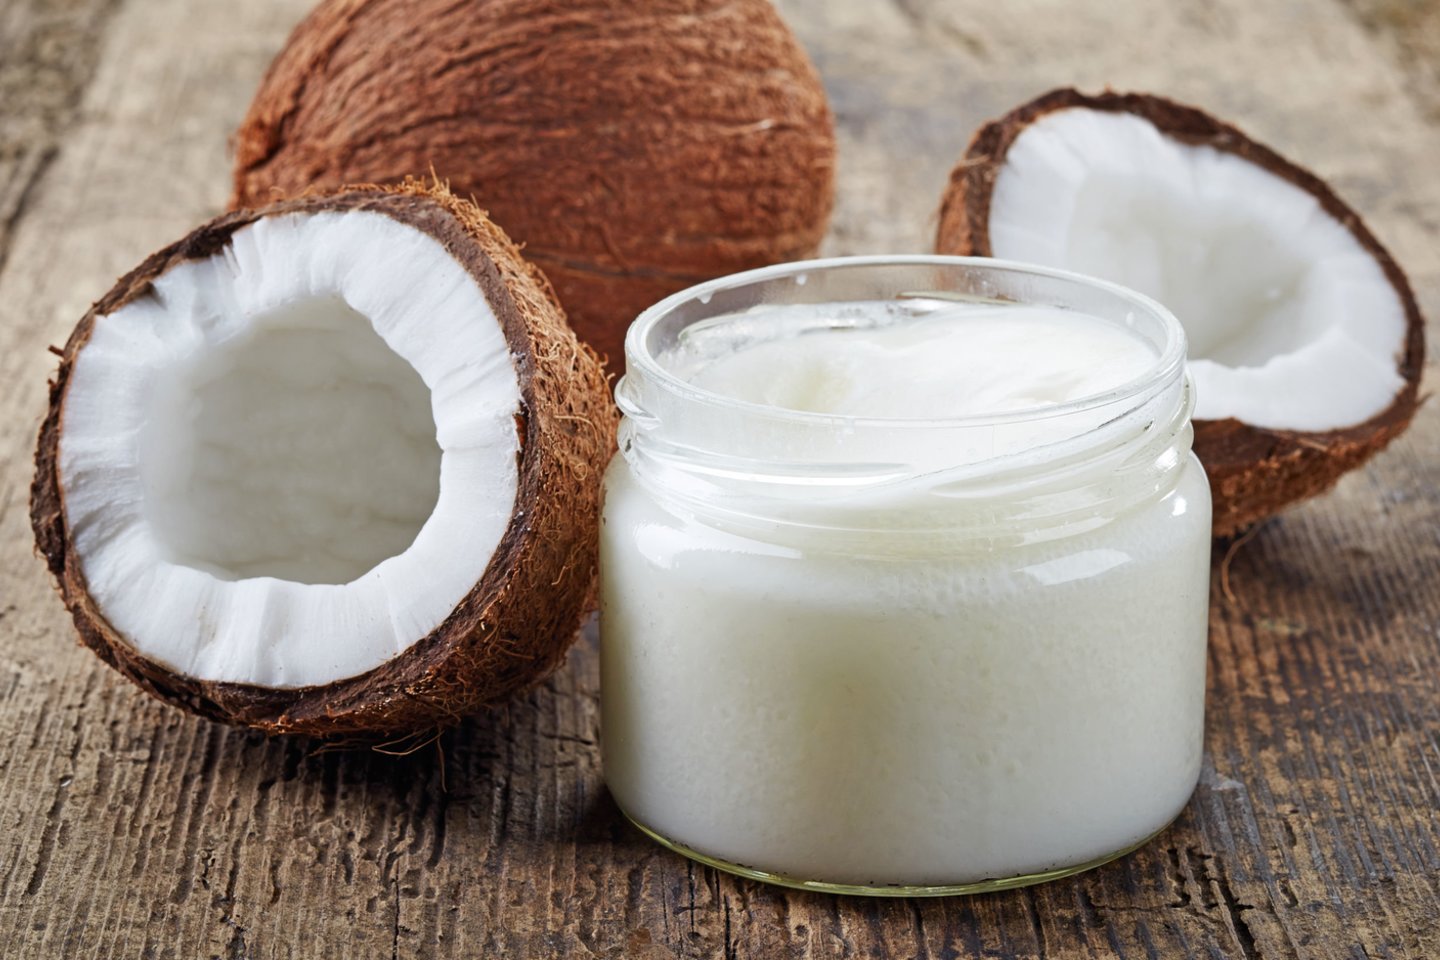  Kokosų aliejus iš tiesų gali kenkti sveikatai – ypač jeigu jį naudosime nesaikingai.<br> 123rf nuotr.